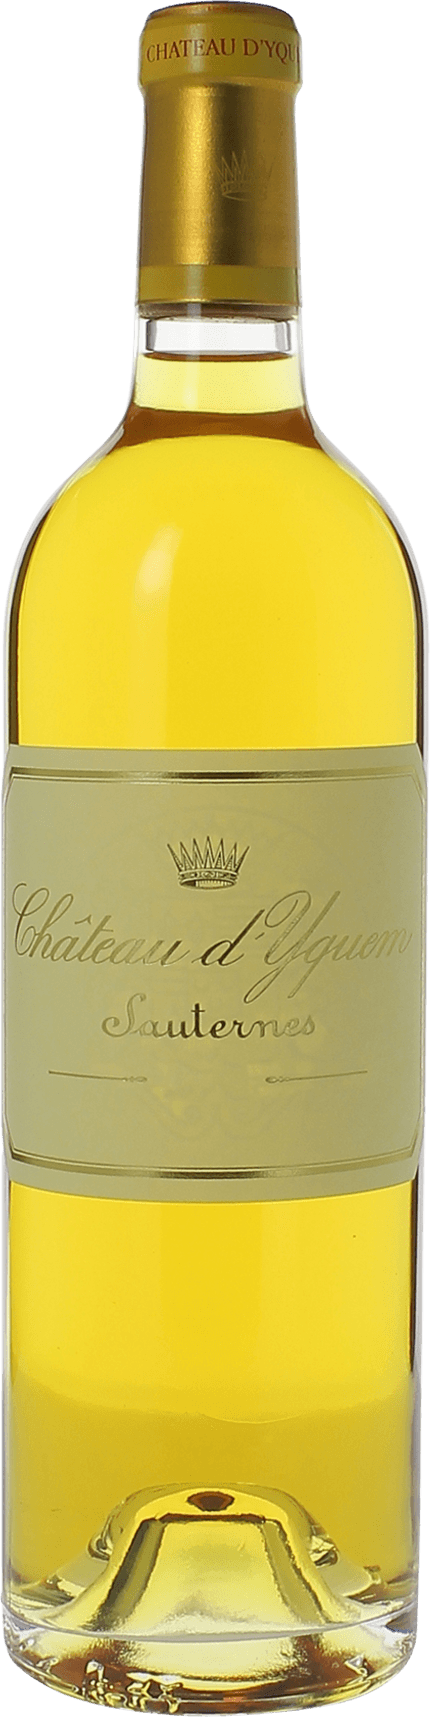 Yquem 2018 1er Grand cru class Sauternes, Bordeaux blanc